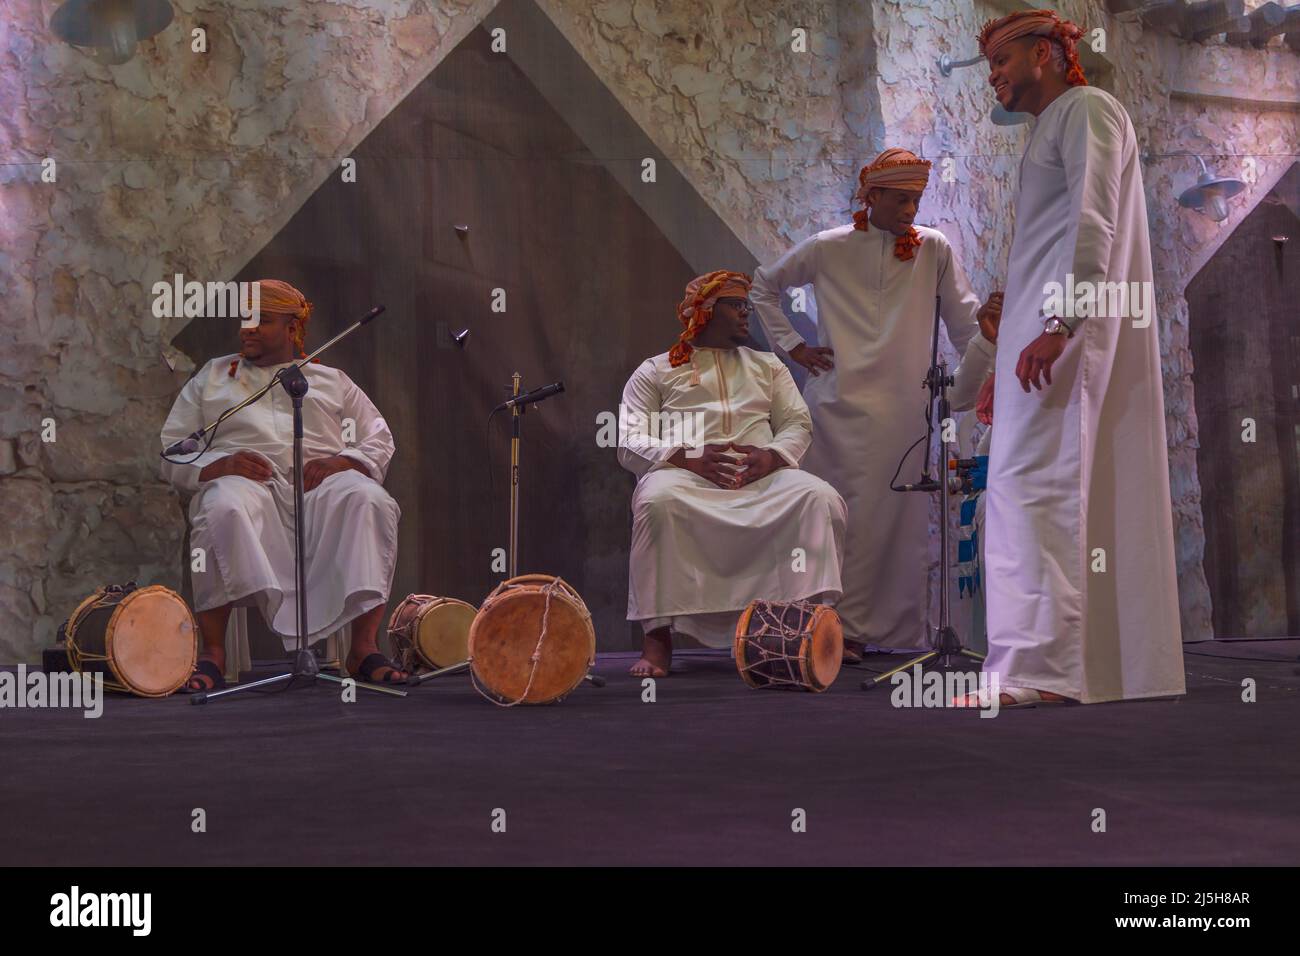 Oman danse folklorique traditionnelle (danse ardah) dans le village culturel de Katara, Doha, Qatar. Banque D'Images